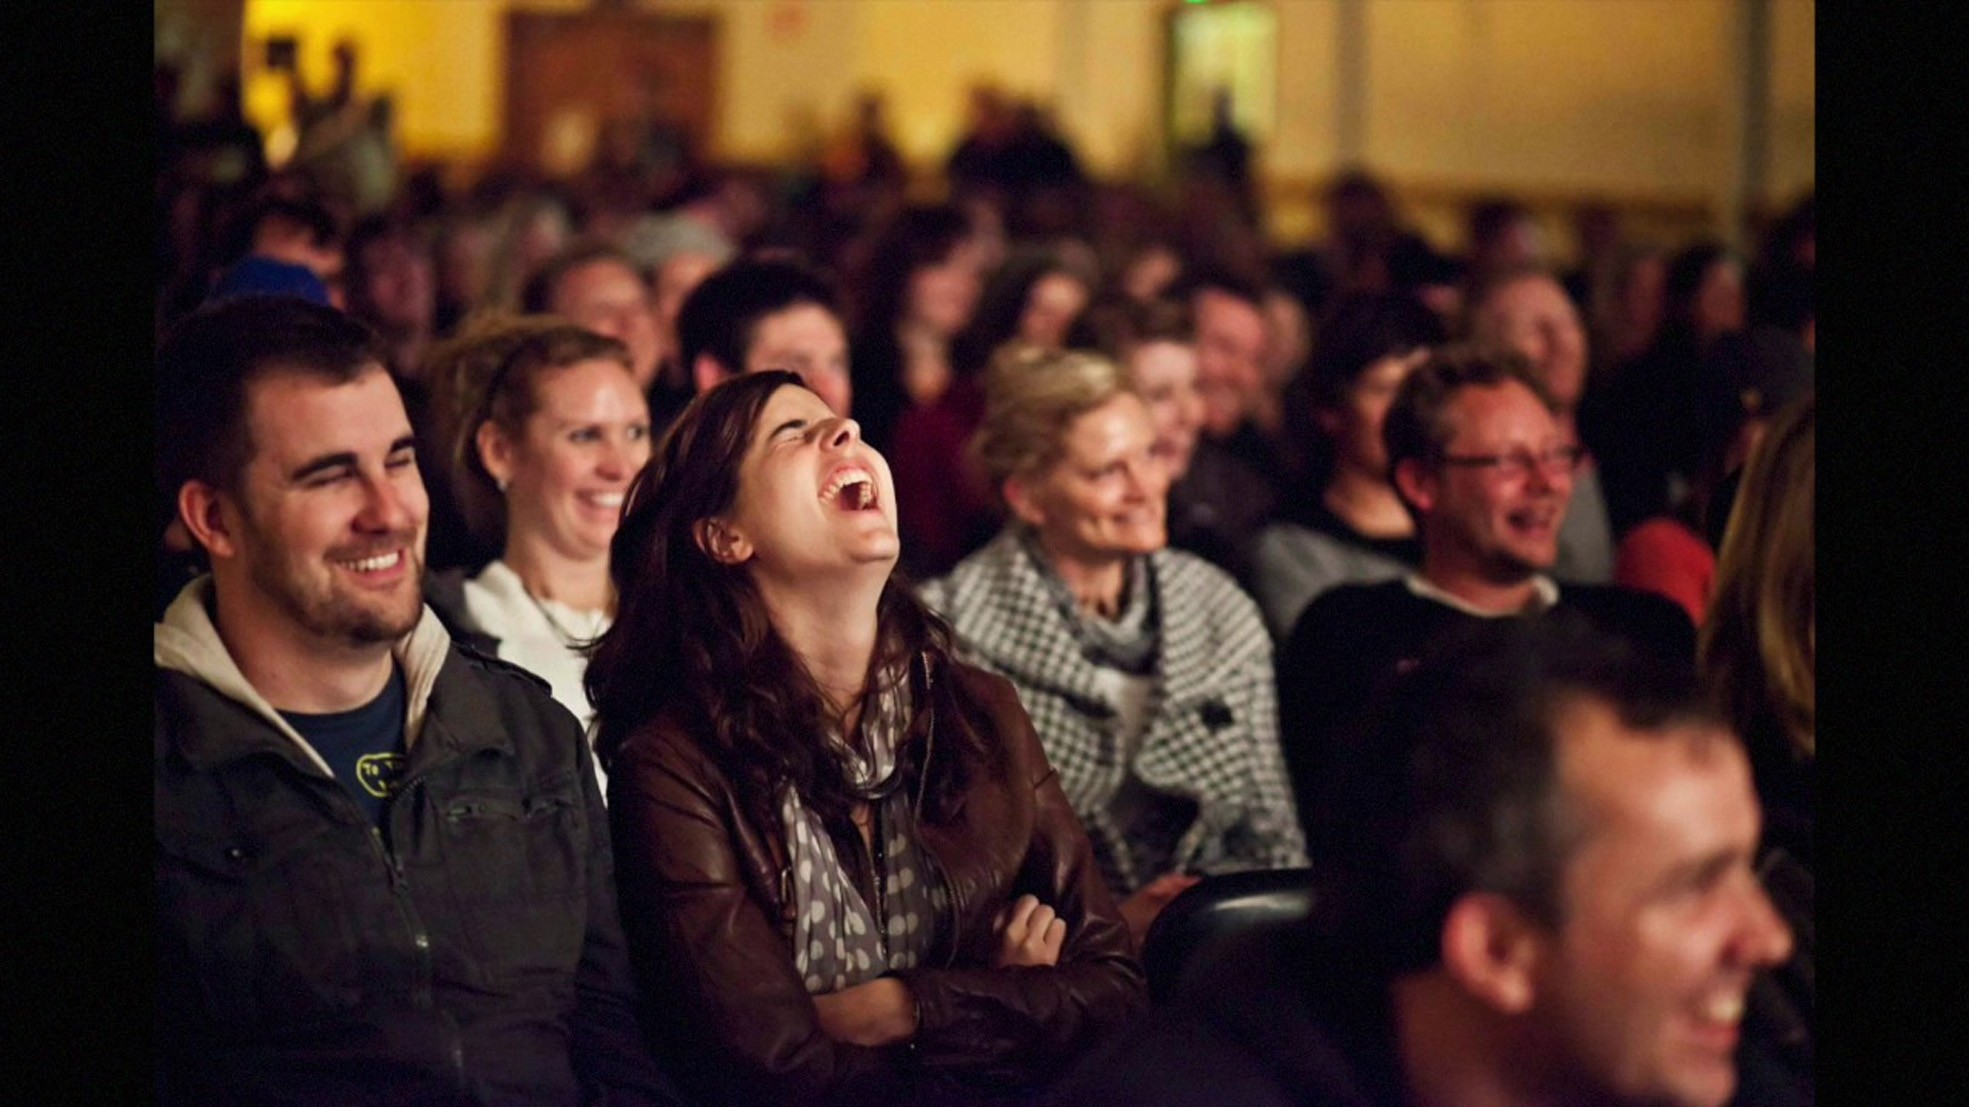 Возгласы зрителей. Зрители в зале. Люди смеются в зале. Зрители в театре. Зрители смеются.